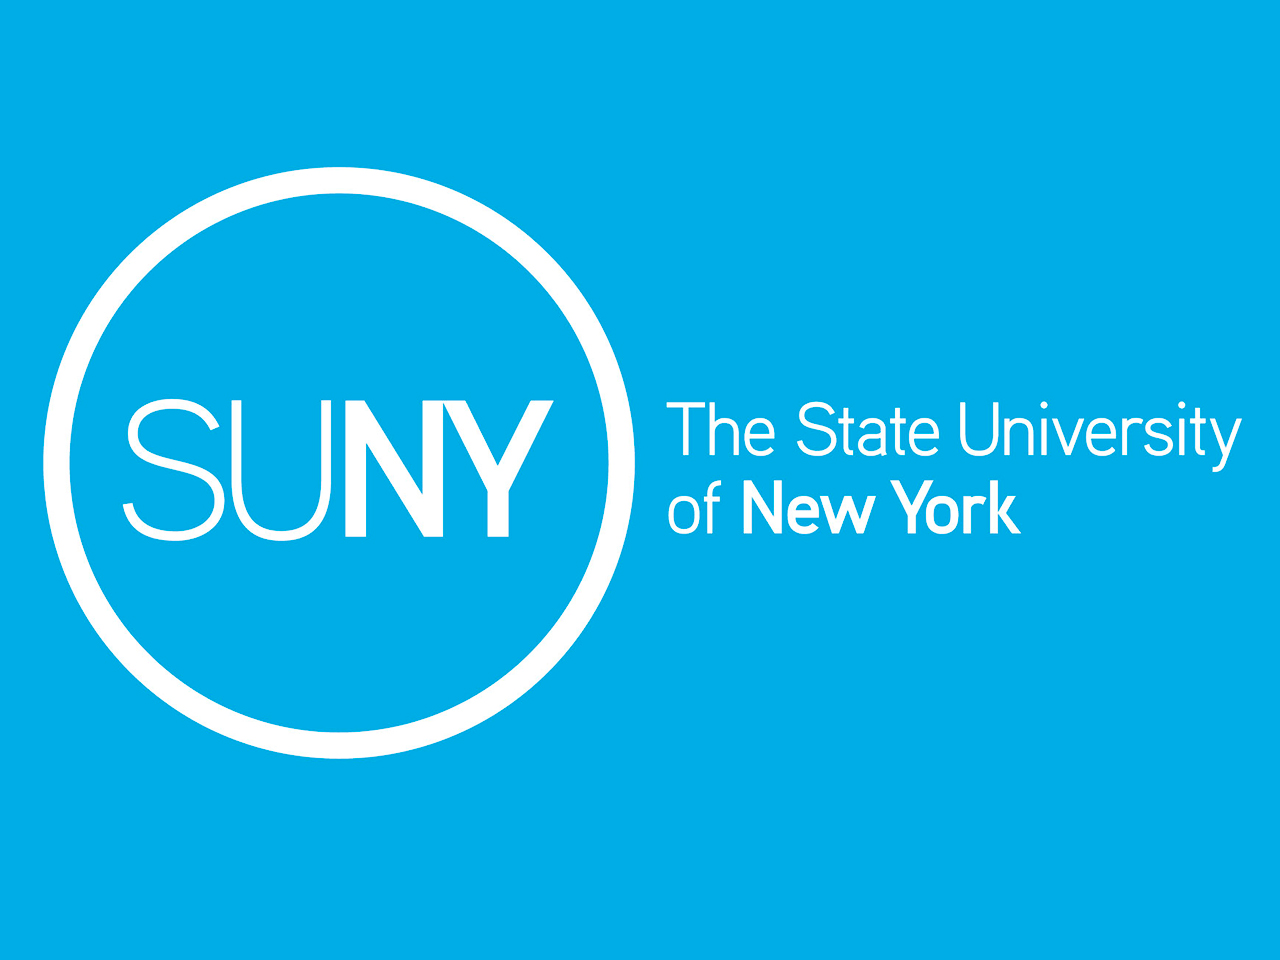 https://collegecomfortu.com/wp-content/uploads/2022/10/SUNY-Logos.jpg